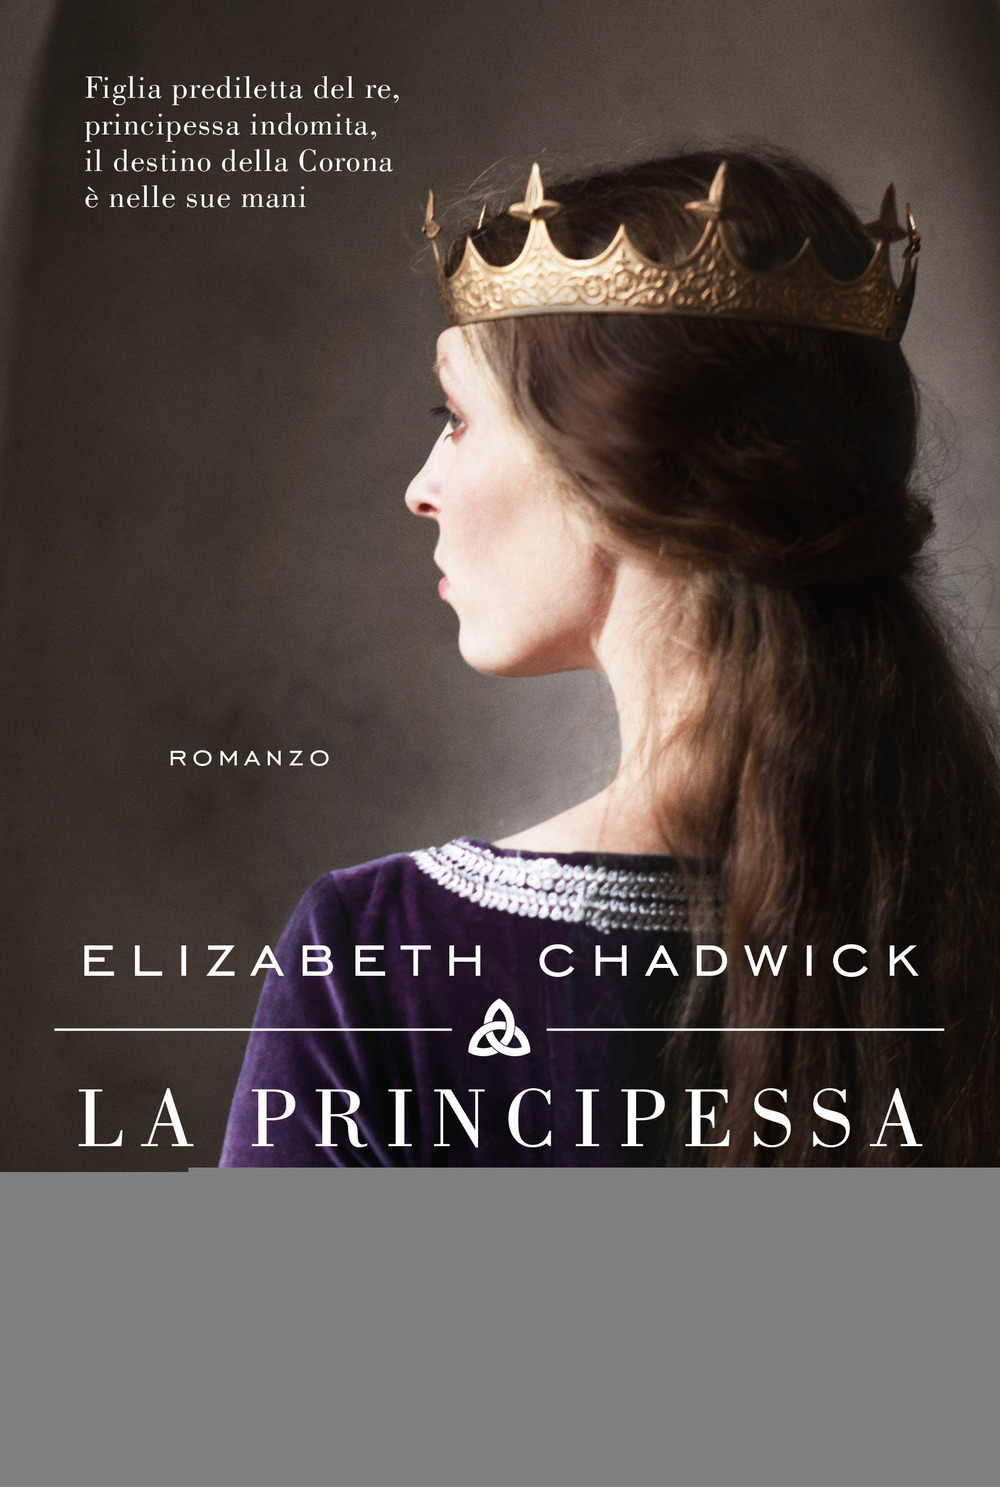 Libri Elizabeth Chadwick - La Principessa D'irlanda NUOVO SIGILLATO, EDIZIONE DEL 11/06/2020 SUBITO DISPONIBILE